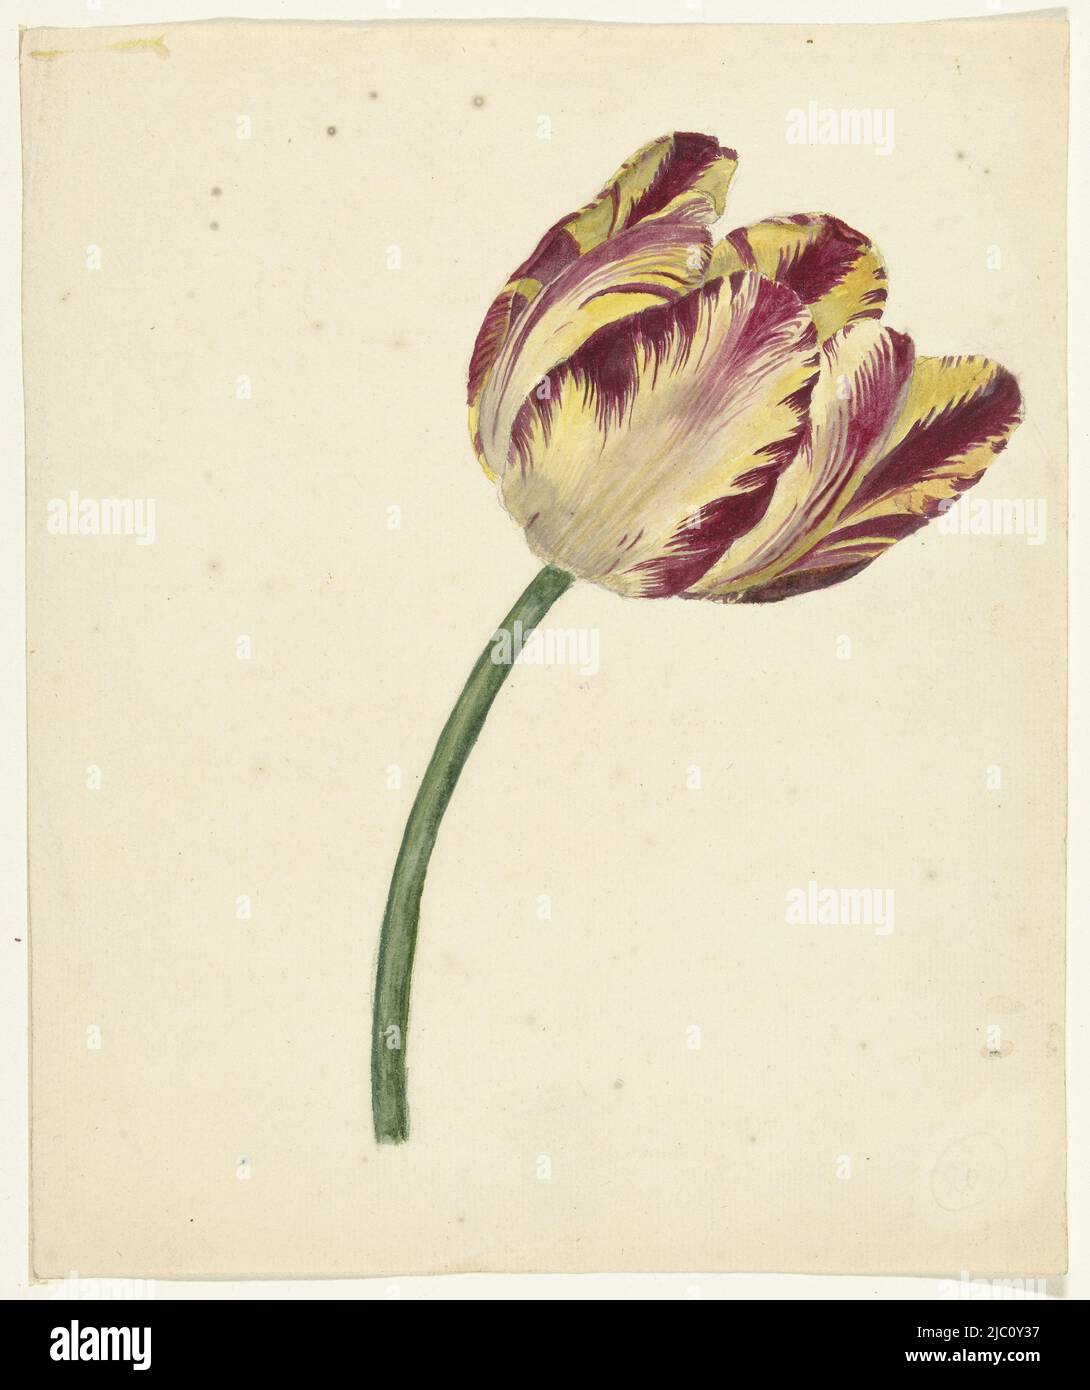 Gelb-rote Tulpe, Zeichner: Anonym, 1700 - 1800, Papier, Pinsel, H 253 mm × B 209 mm Stockfoto